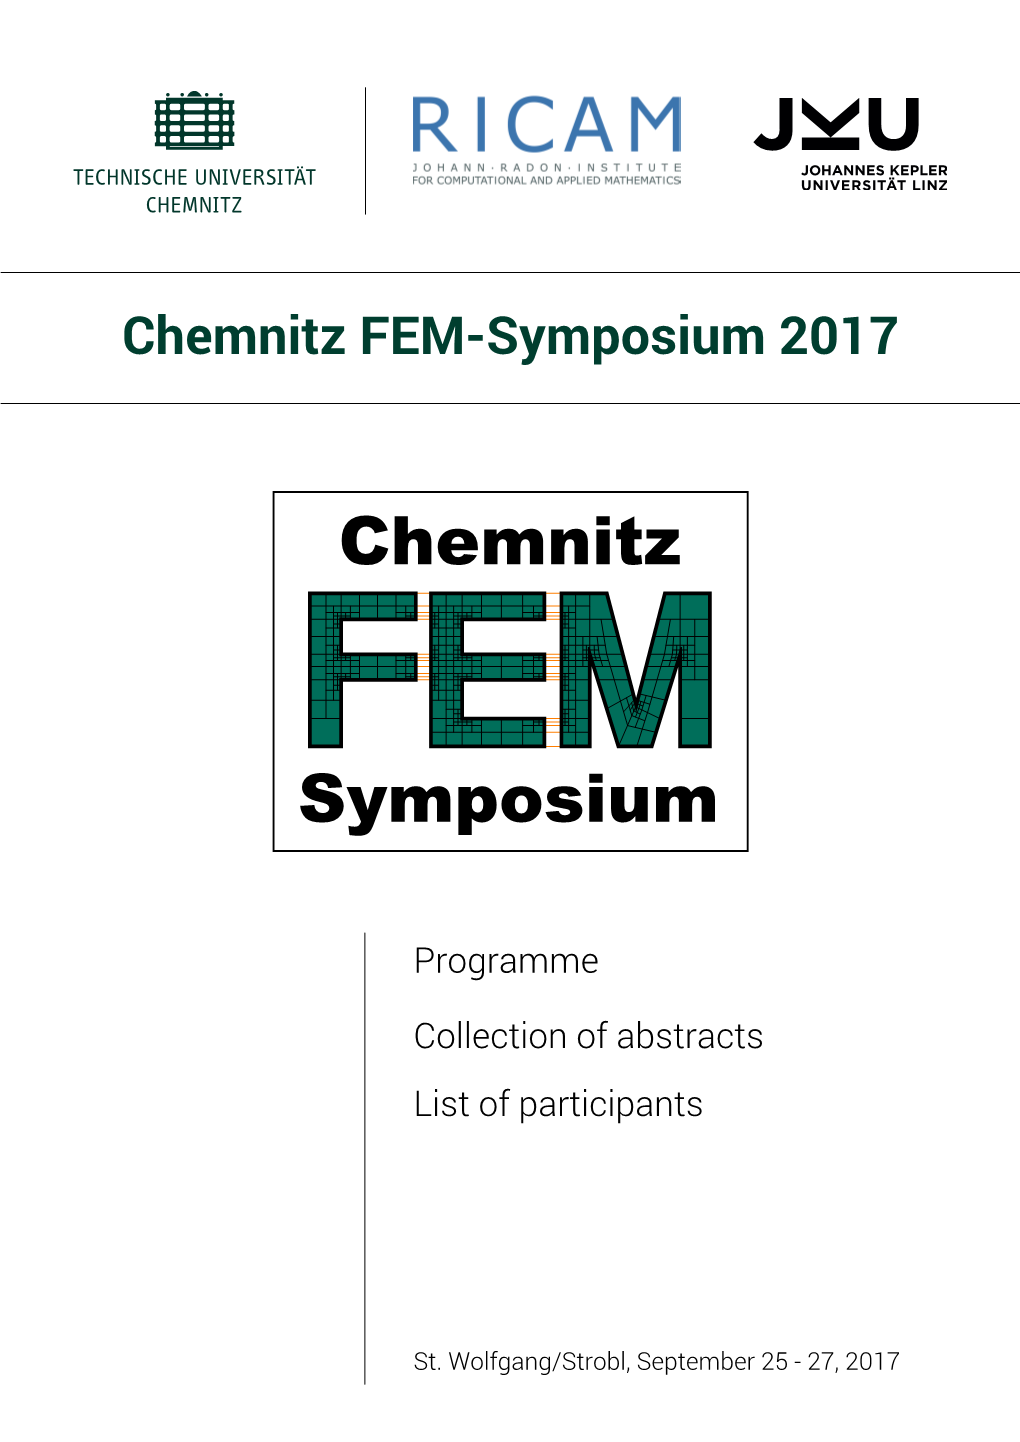 Booklet for the 30Th Chemnitz FEM Symposium